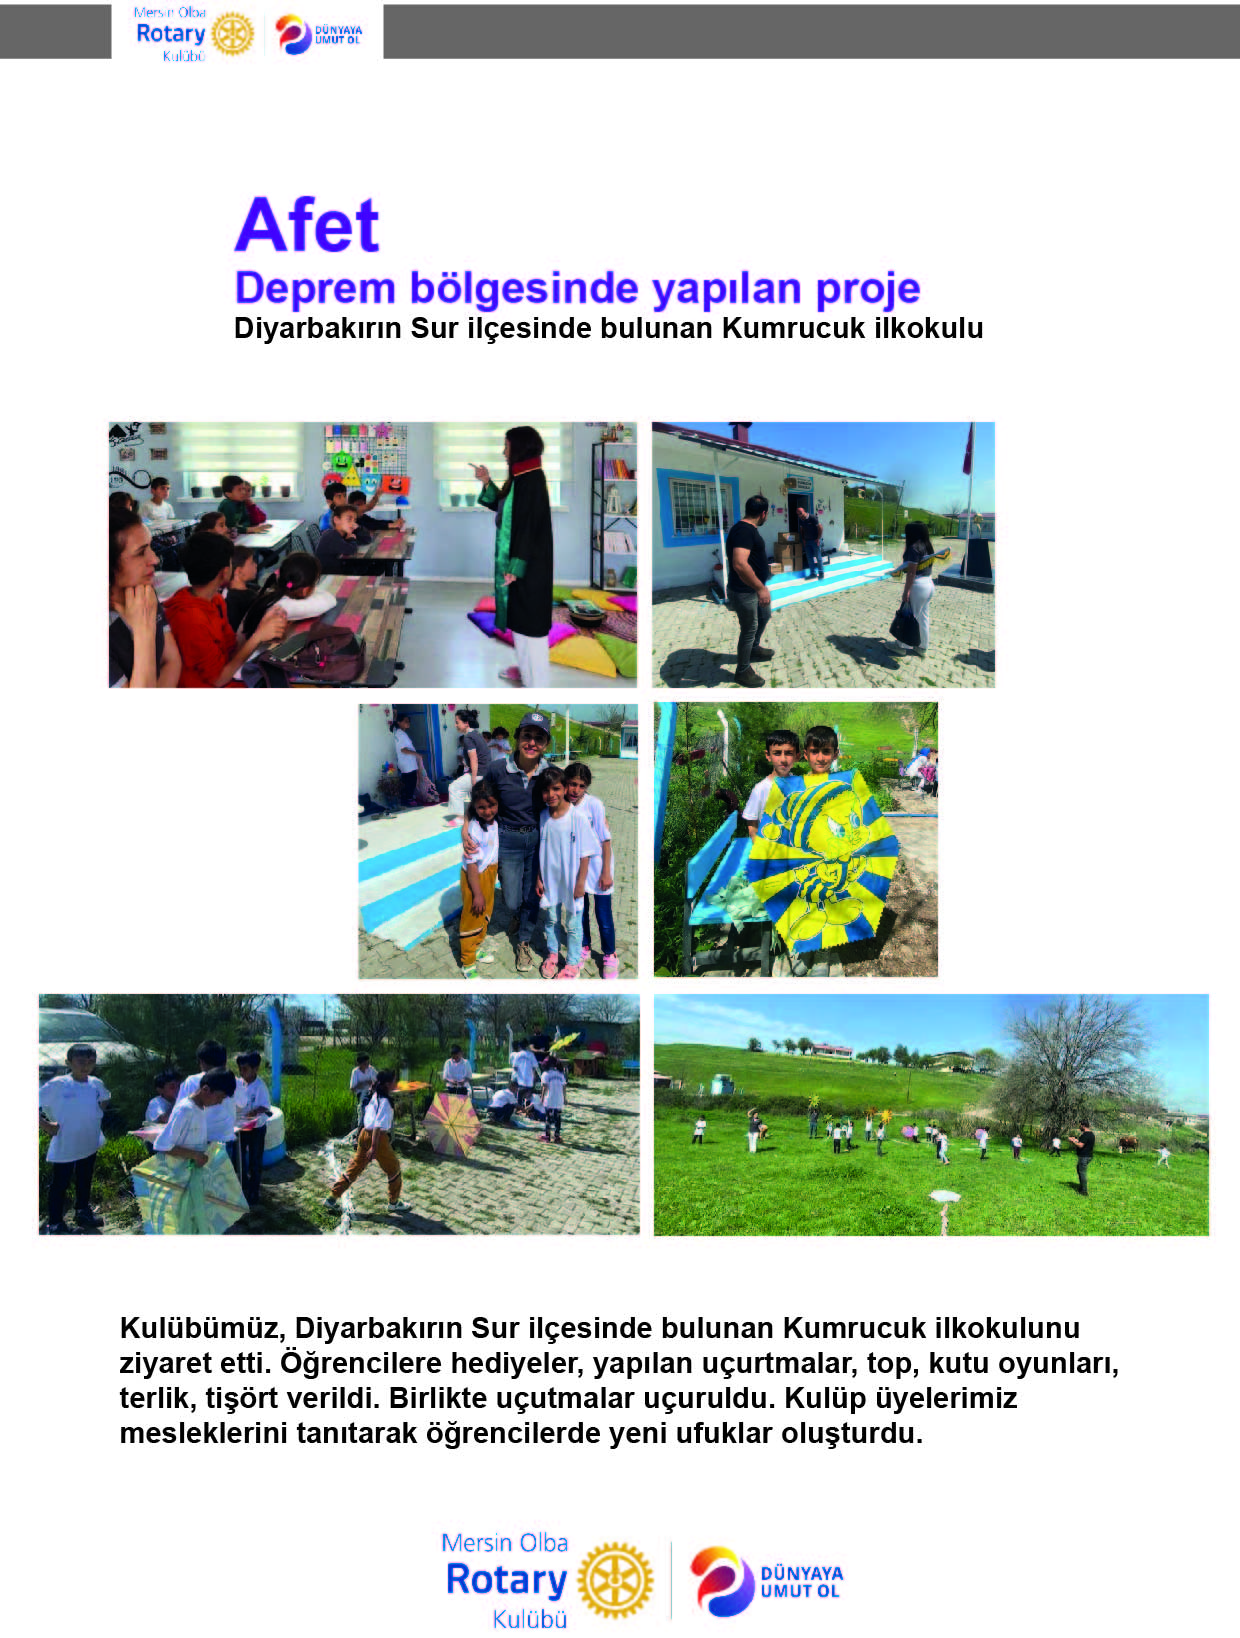 Mersin Olba Rotary KulübüSur İlçesinde bulunan Kumrucuk İlkokulu